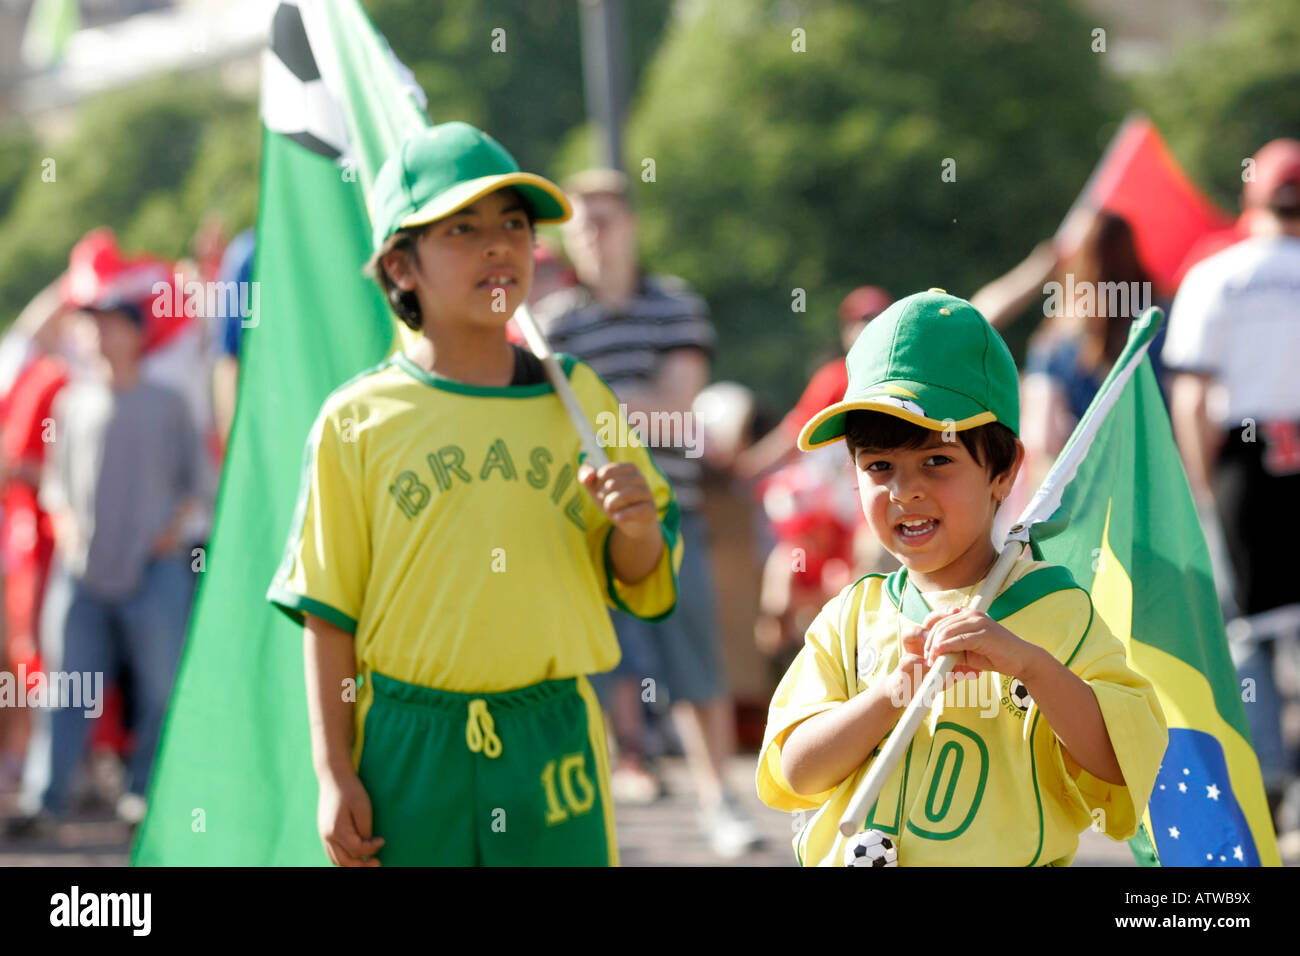 Brasilian soccer fans célébrant la coupe du monde 2006 Banque D'Images